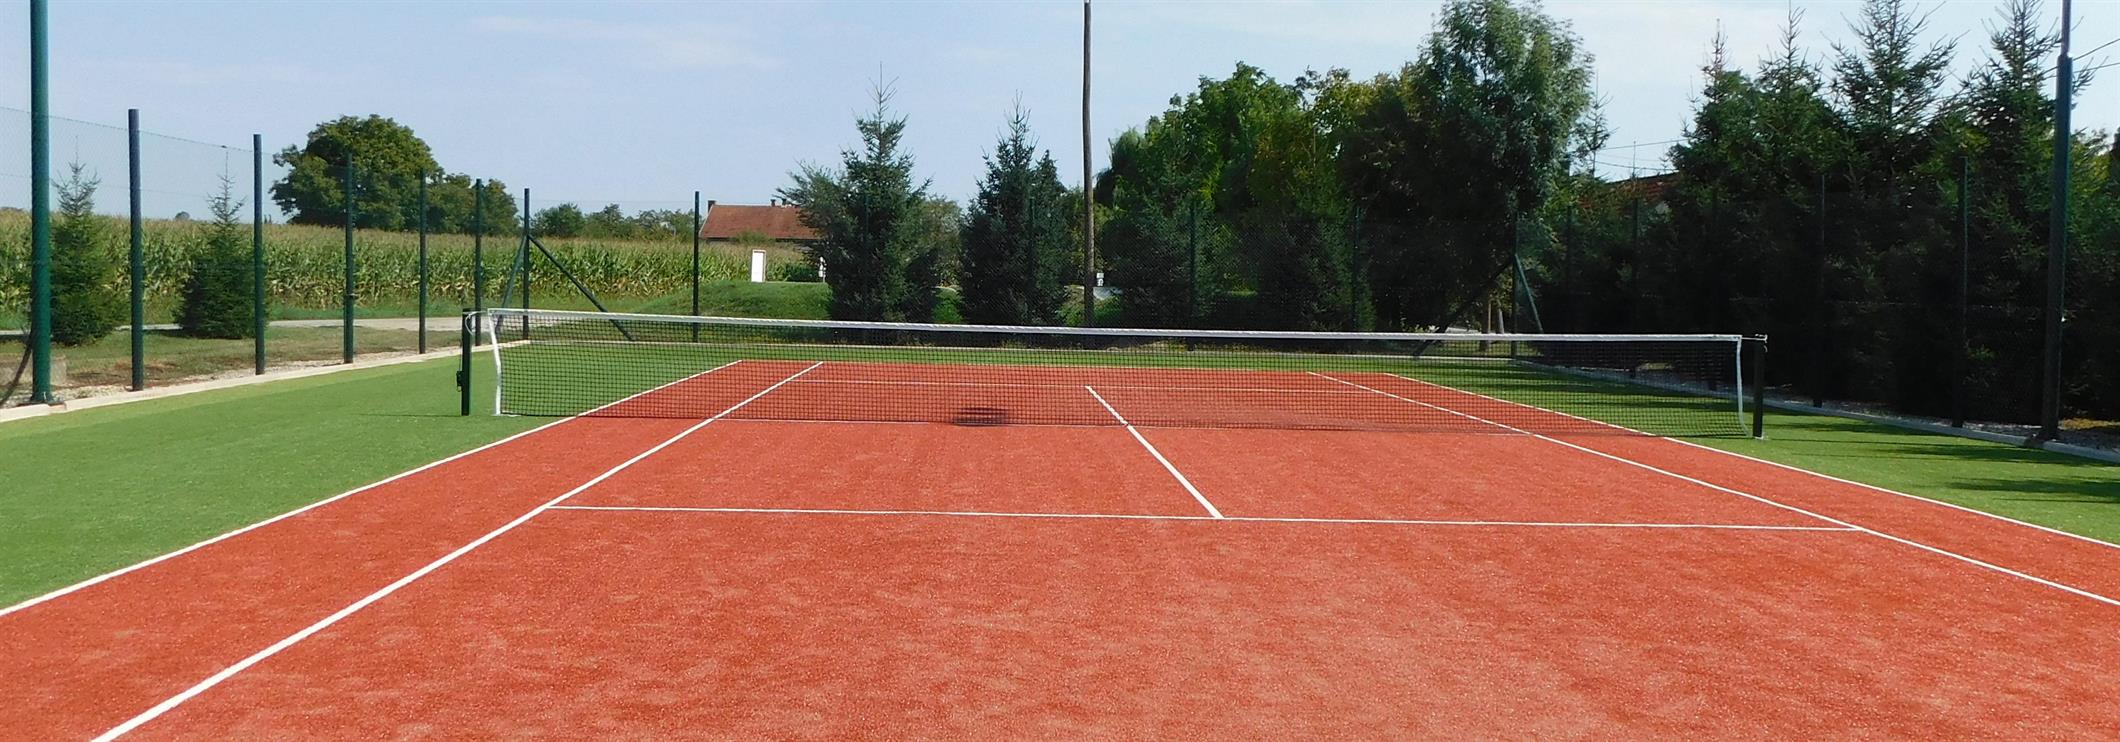 Urejeno tenis igrišče